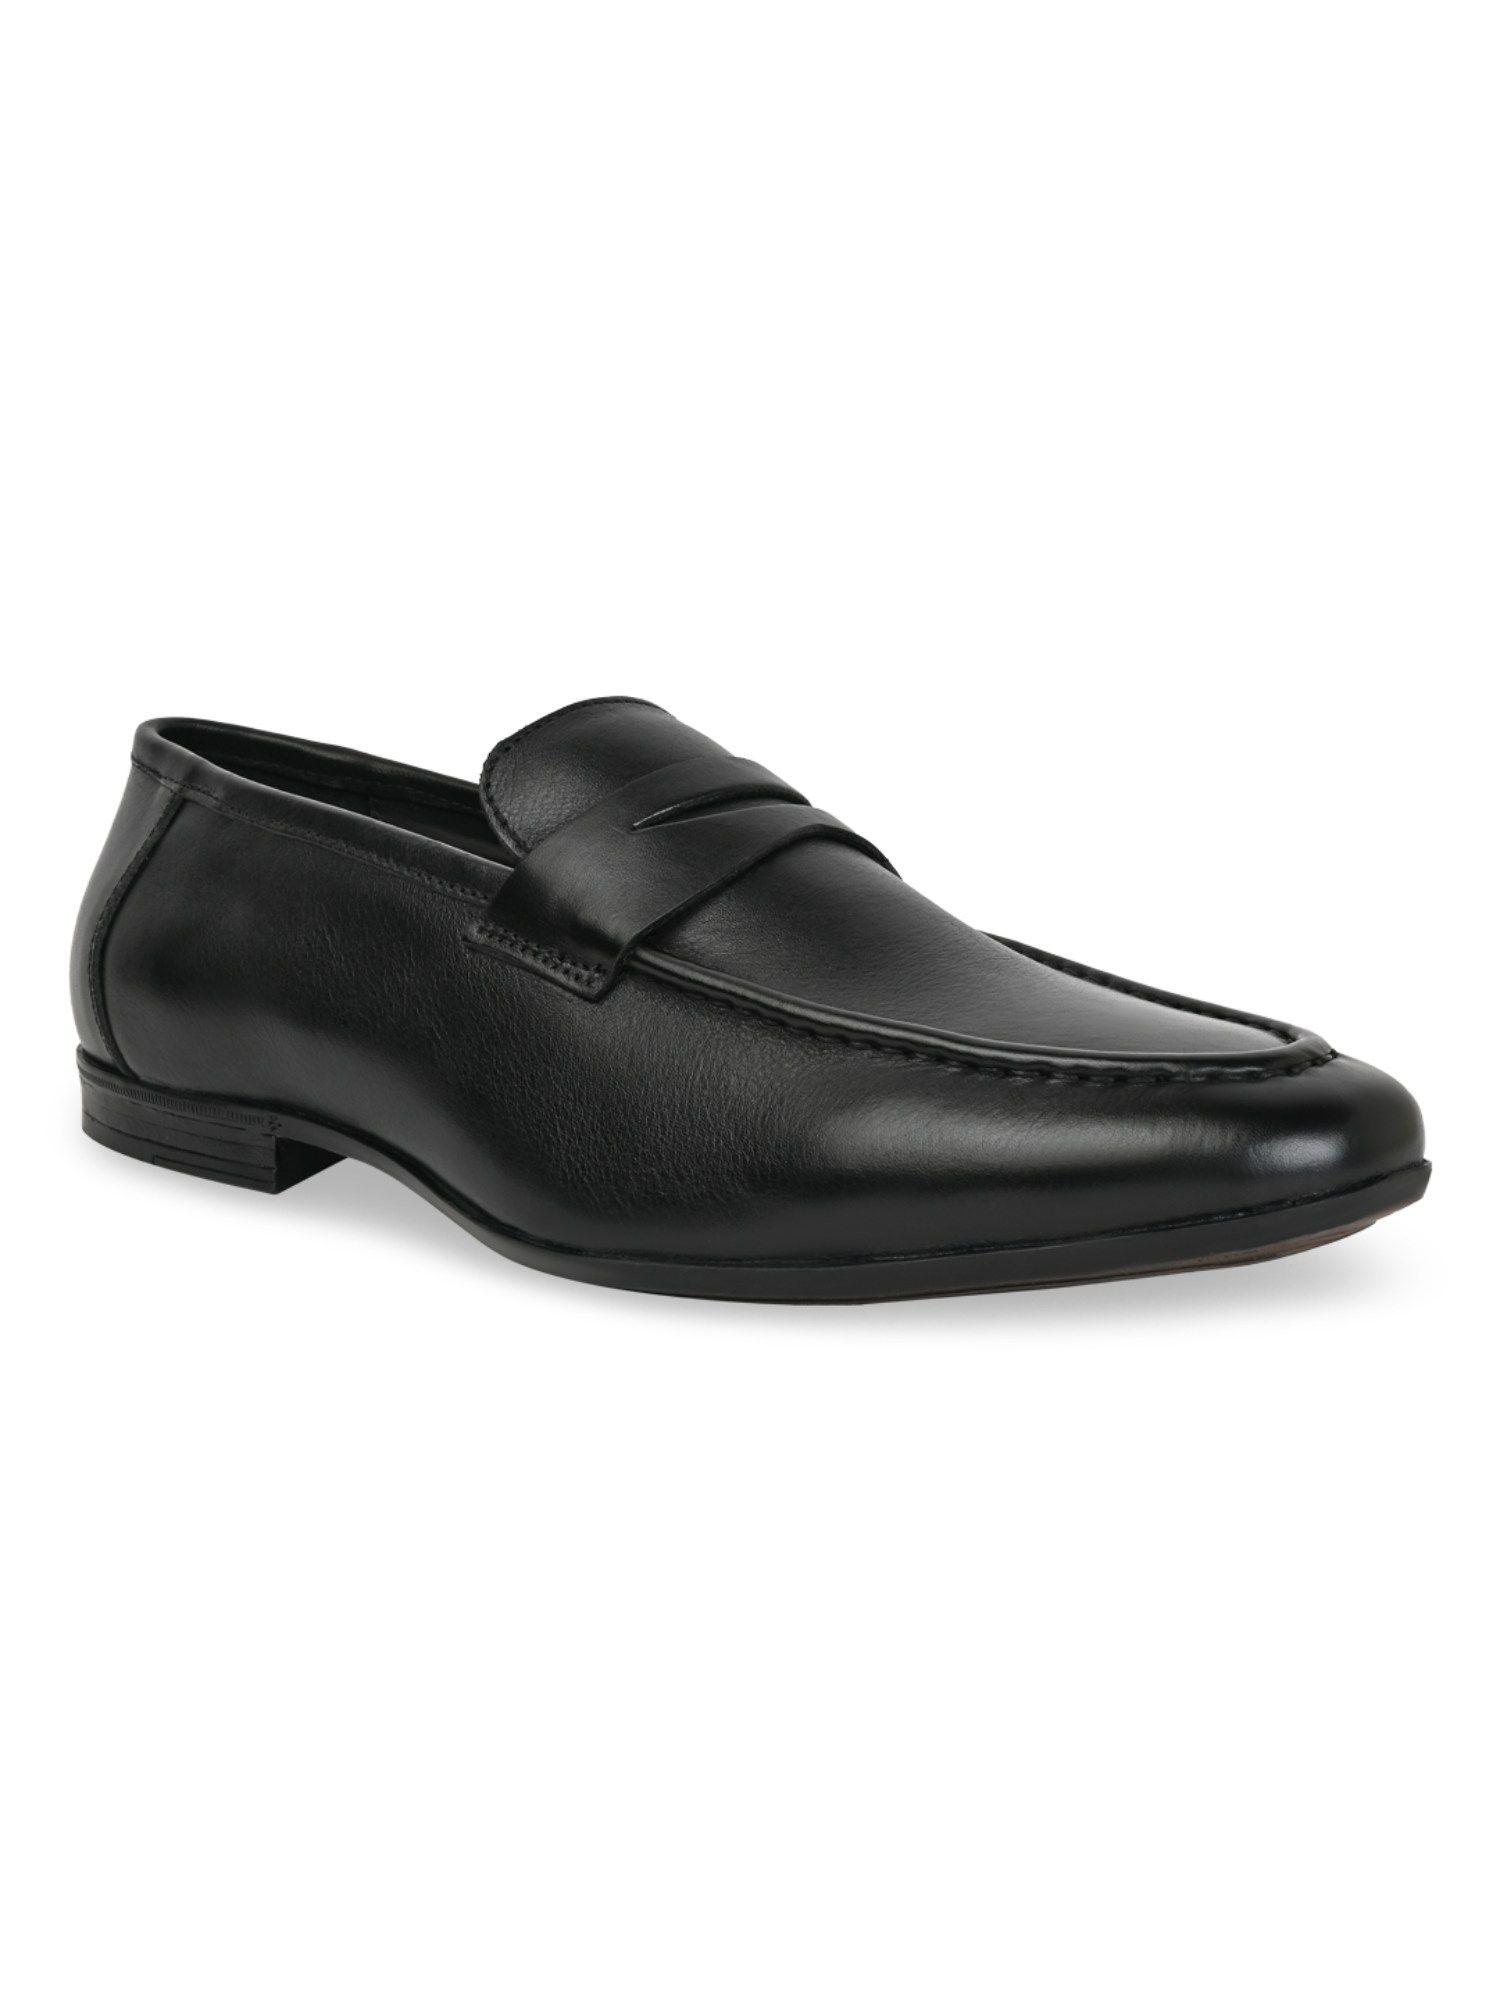 black-men-leather-slip-on-moccasins